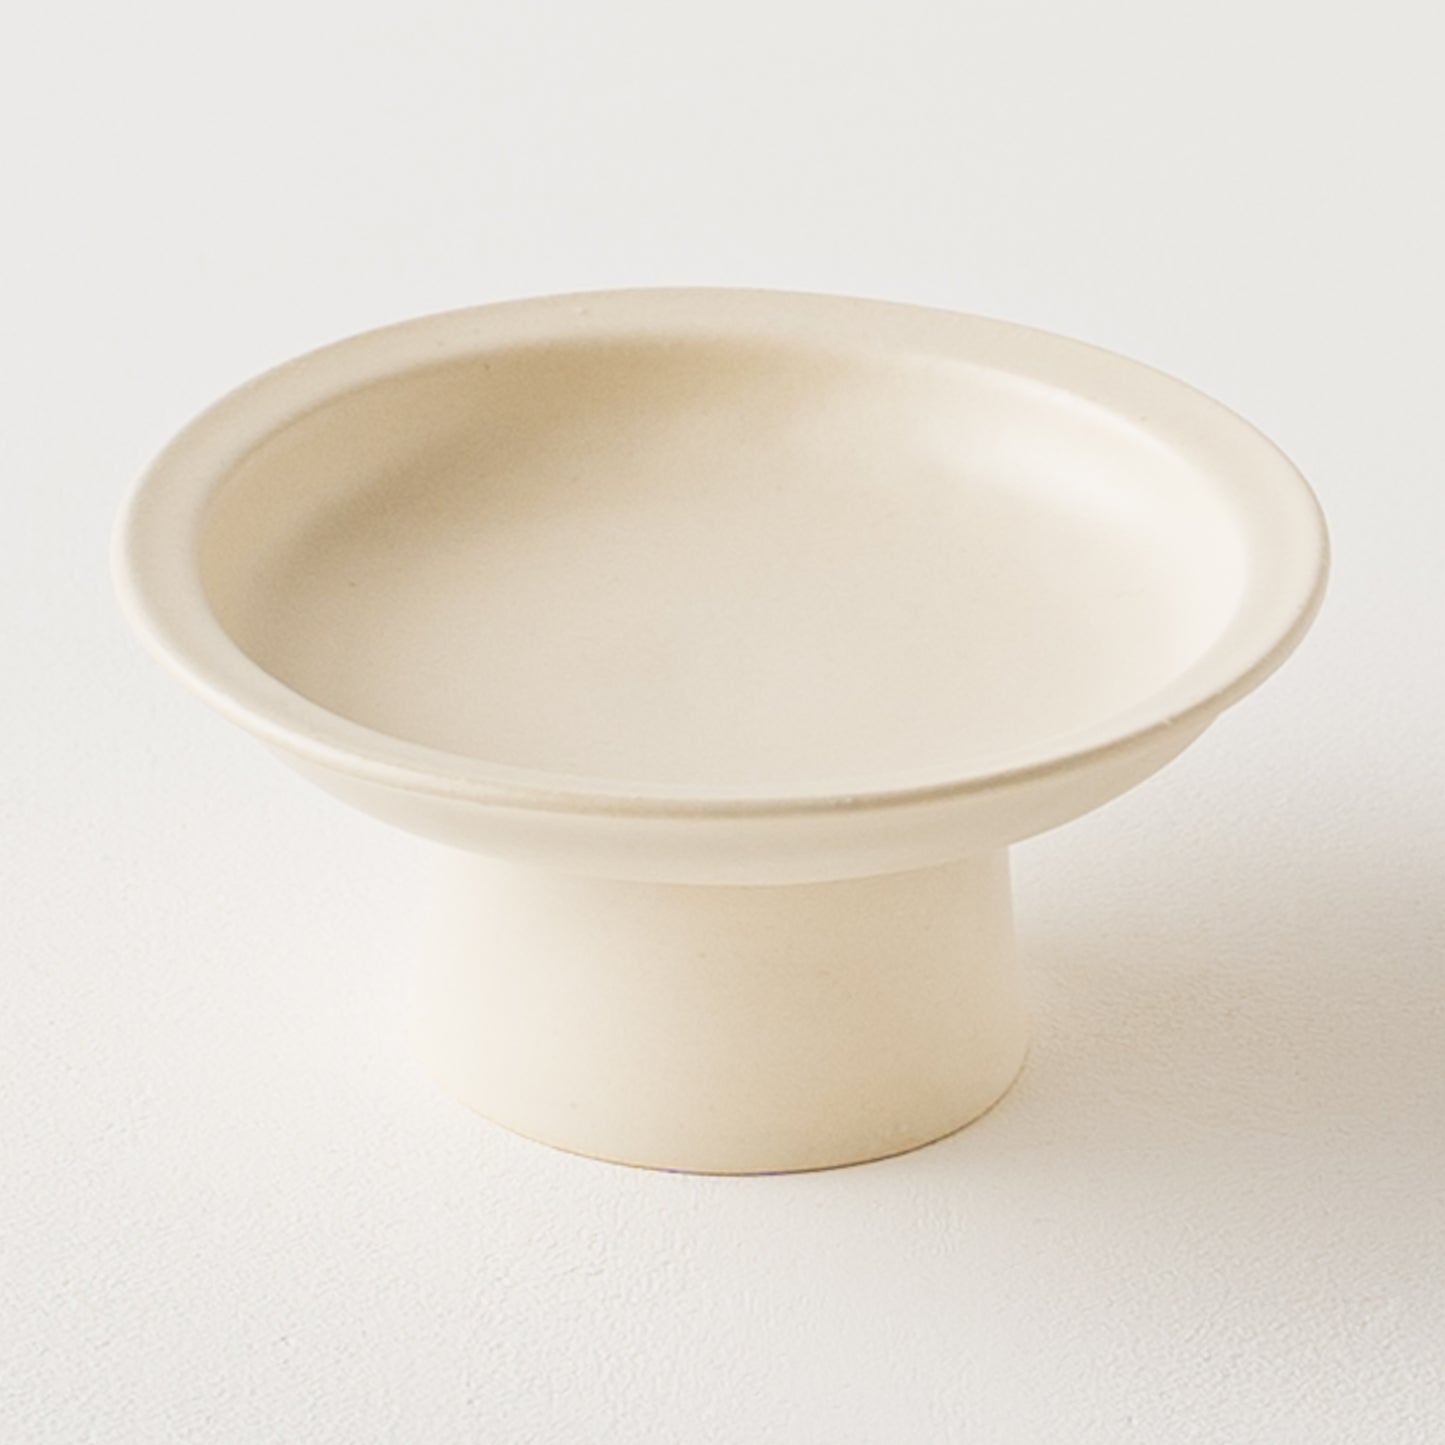 アイボリーのような白に温かみを感じるyoshida potteryの高杯皿